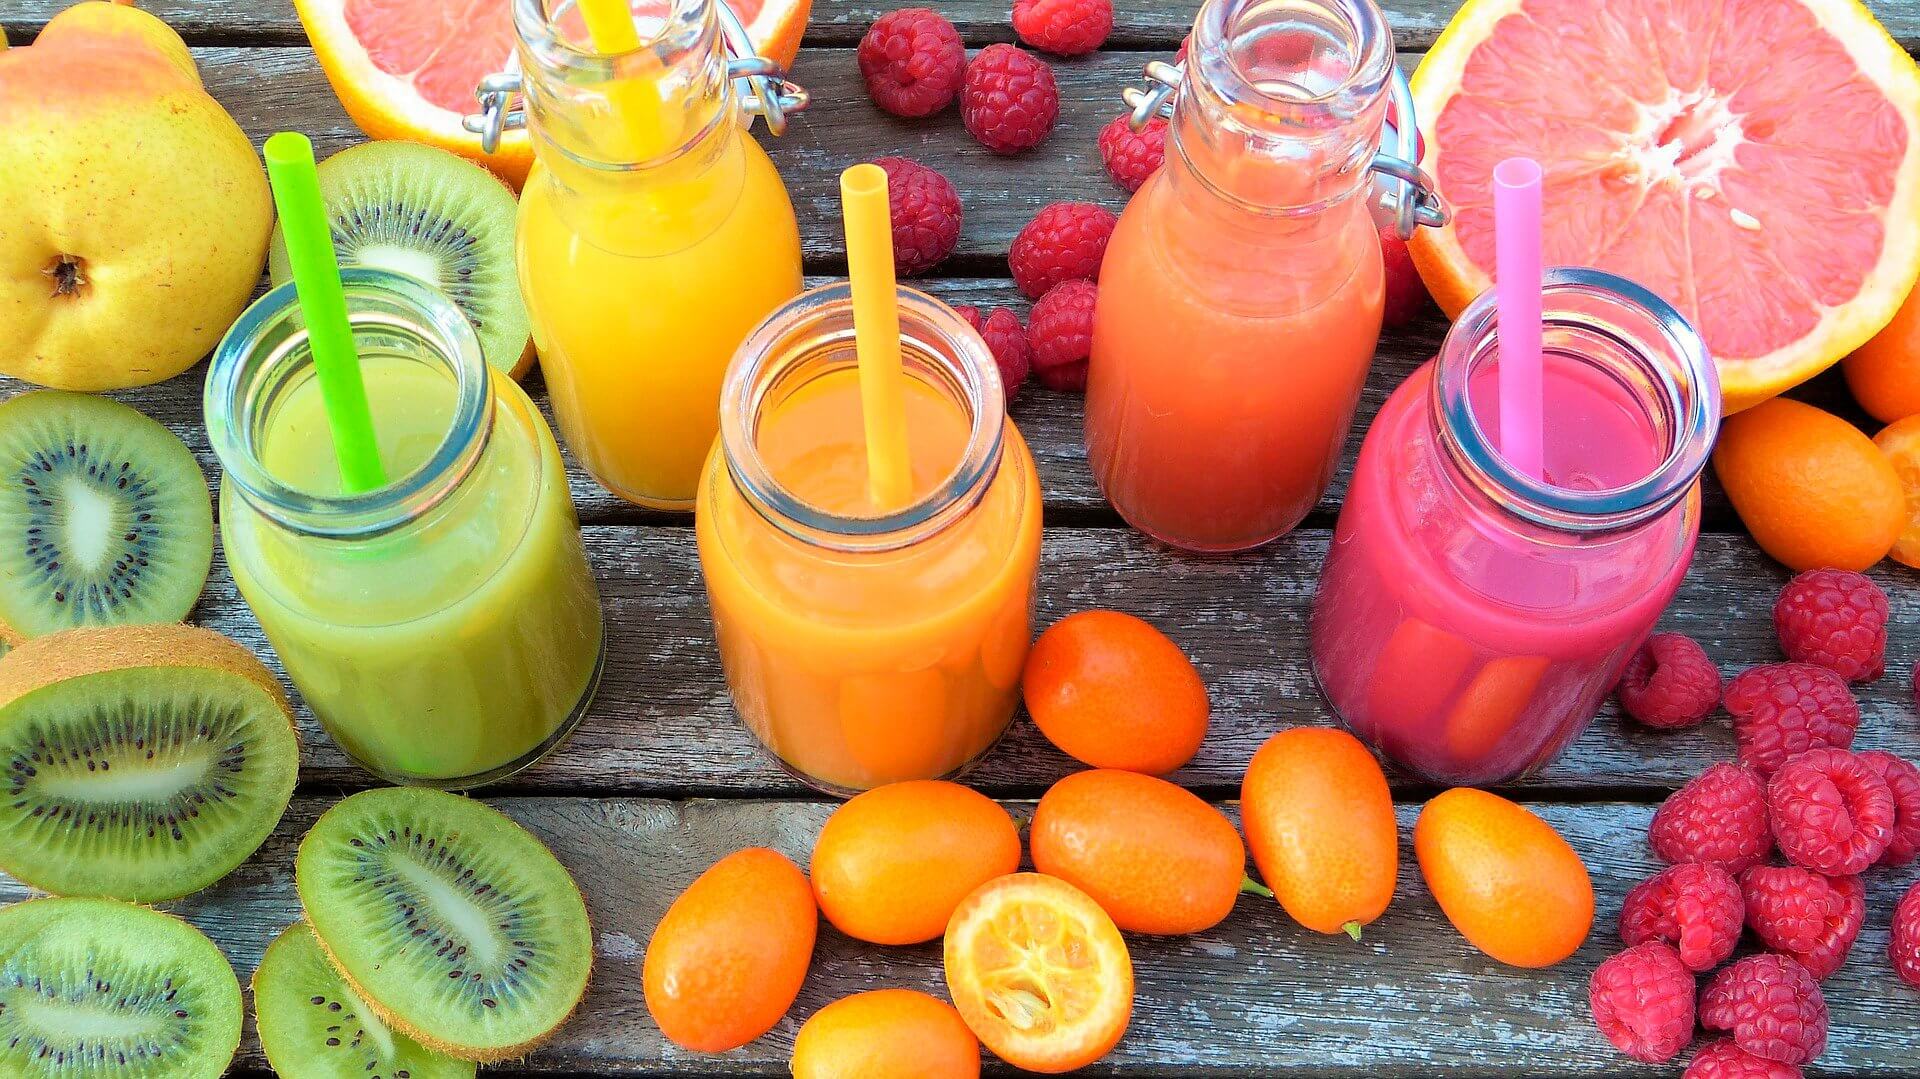 عصير الفاكهة هو أكثر ضررا من غيرها من المشروبات السكرية?